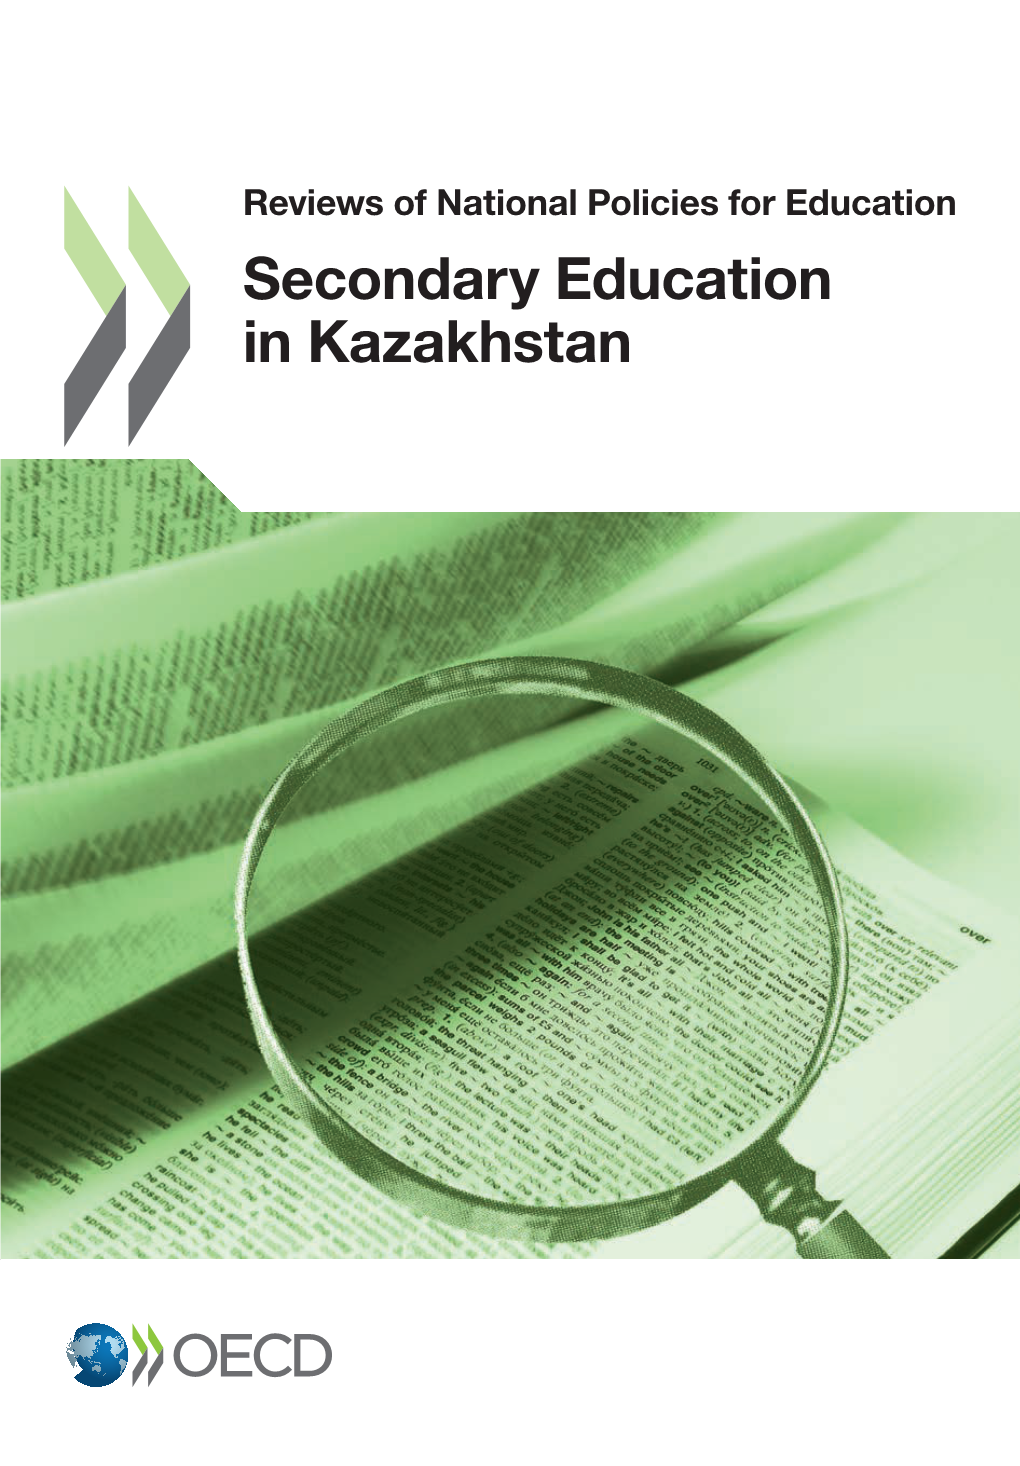 Secondary Education in Kazakhstan